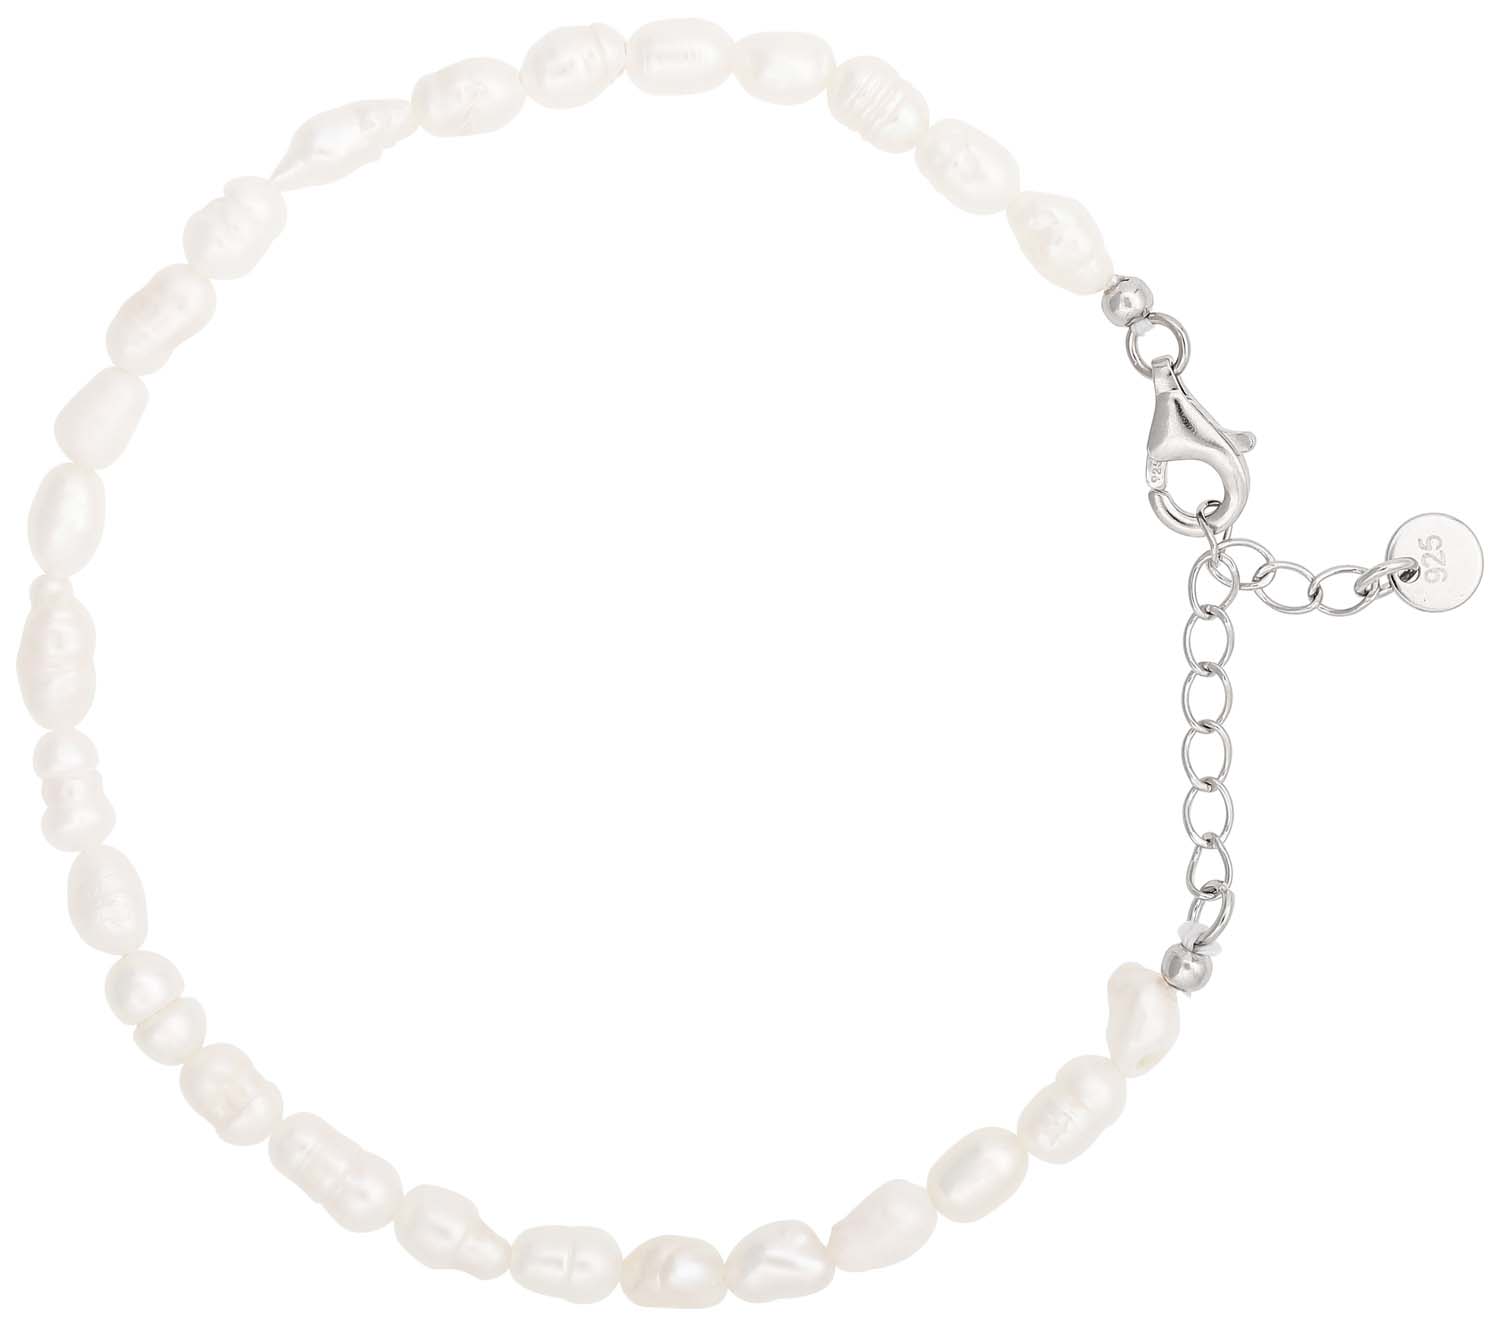 Bracelet - White Pearls